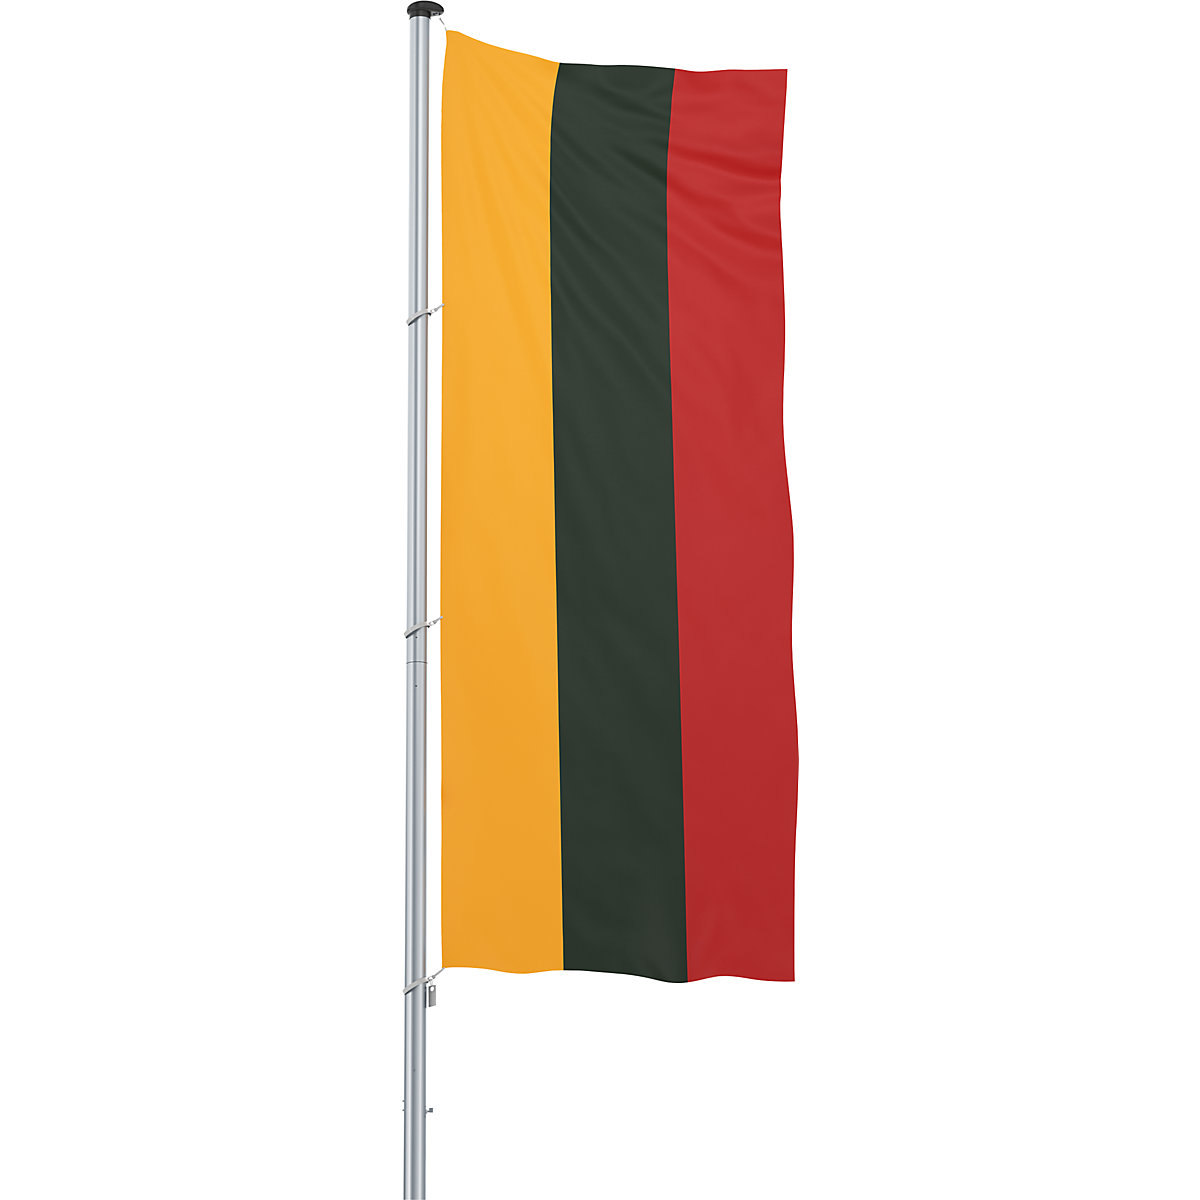 Bandeira para içar/bandeira nacional – Mannus, formato 1,2 x 3 m, Lituânia-20